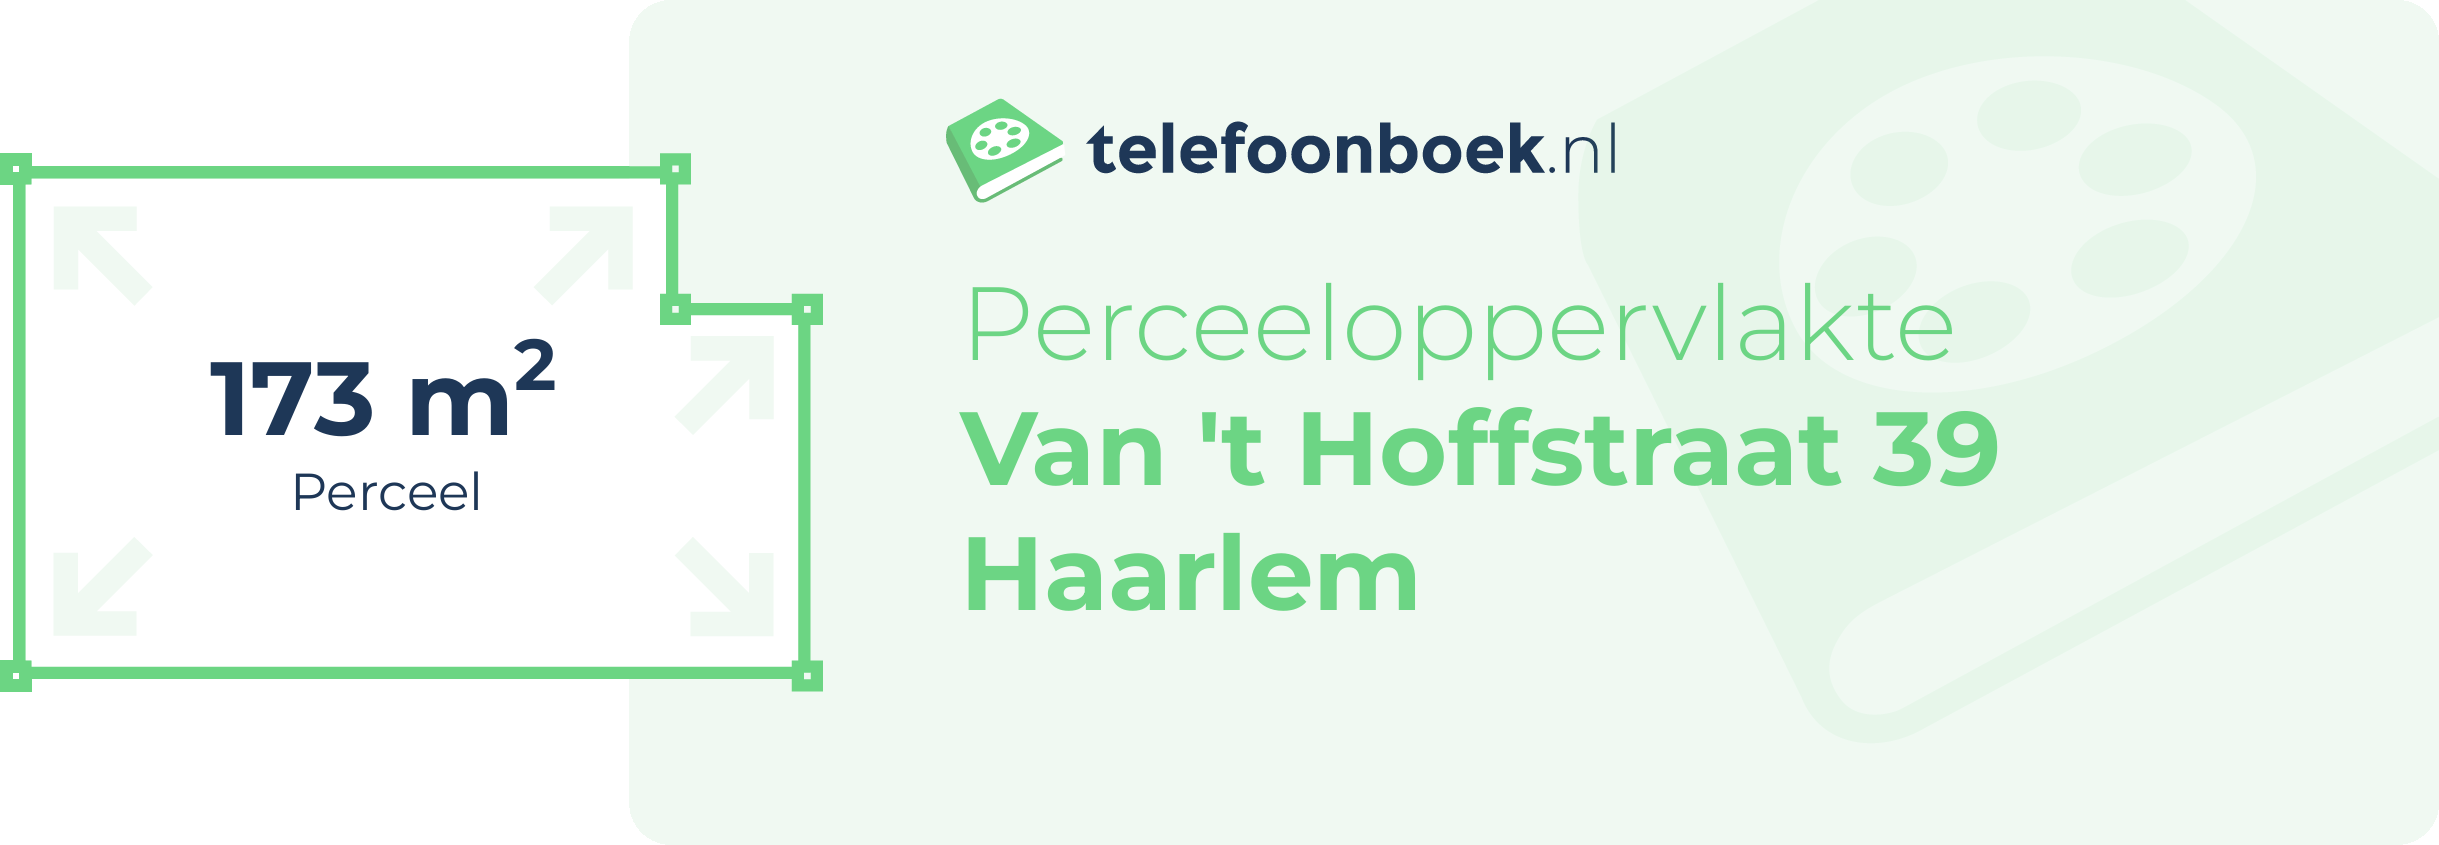 Perceeloppervlakte Van 't Hoffstraat 39 Haarlem